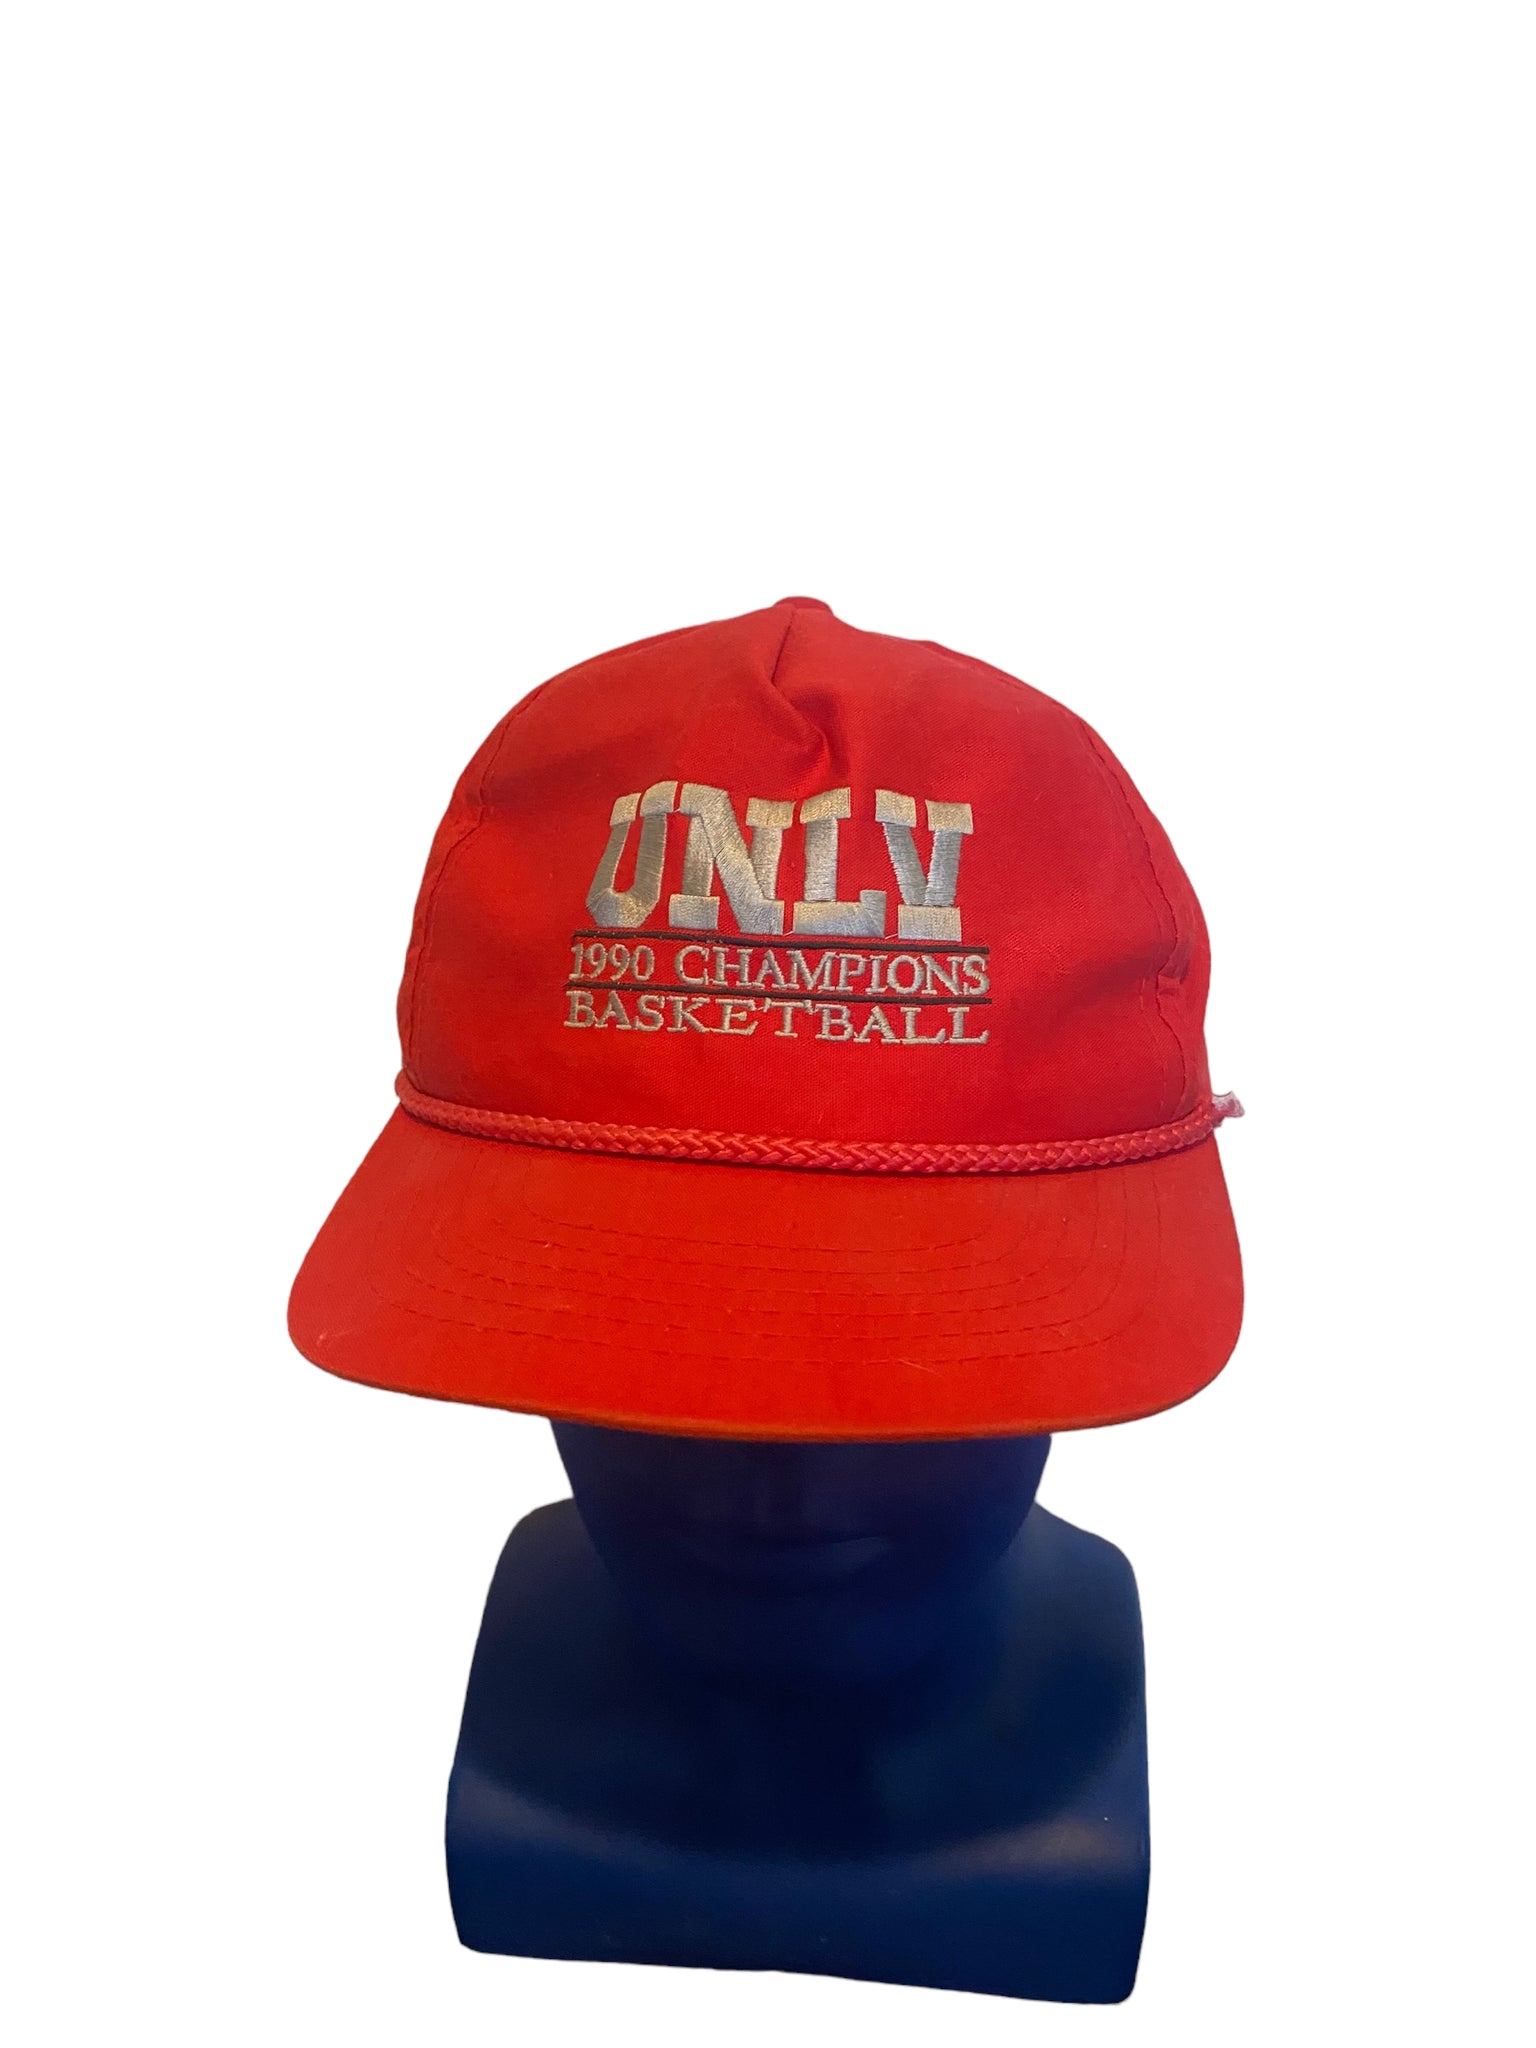 Vintage UNLV Champions Hat 1990 College Basketball Adjustable Snap Back